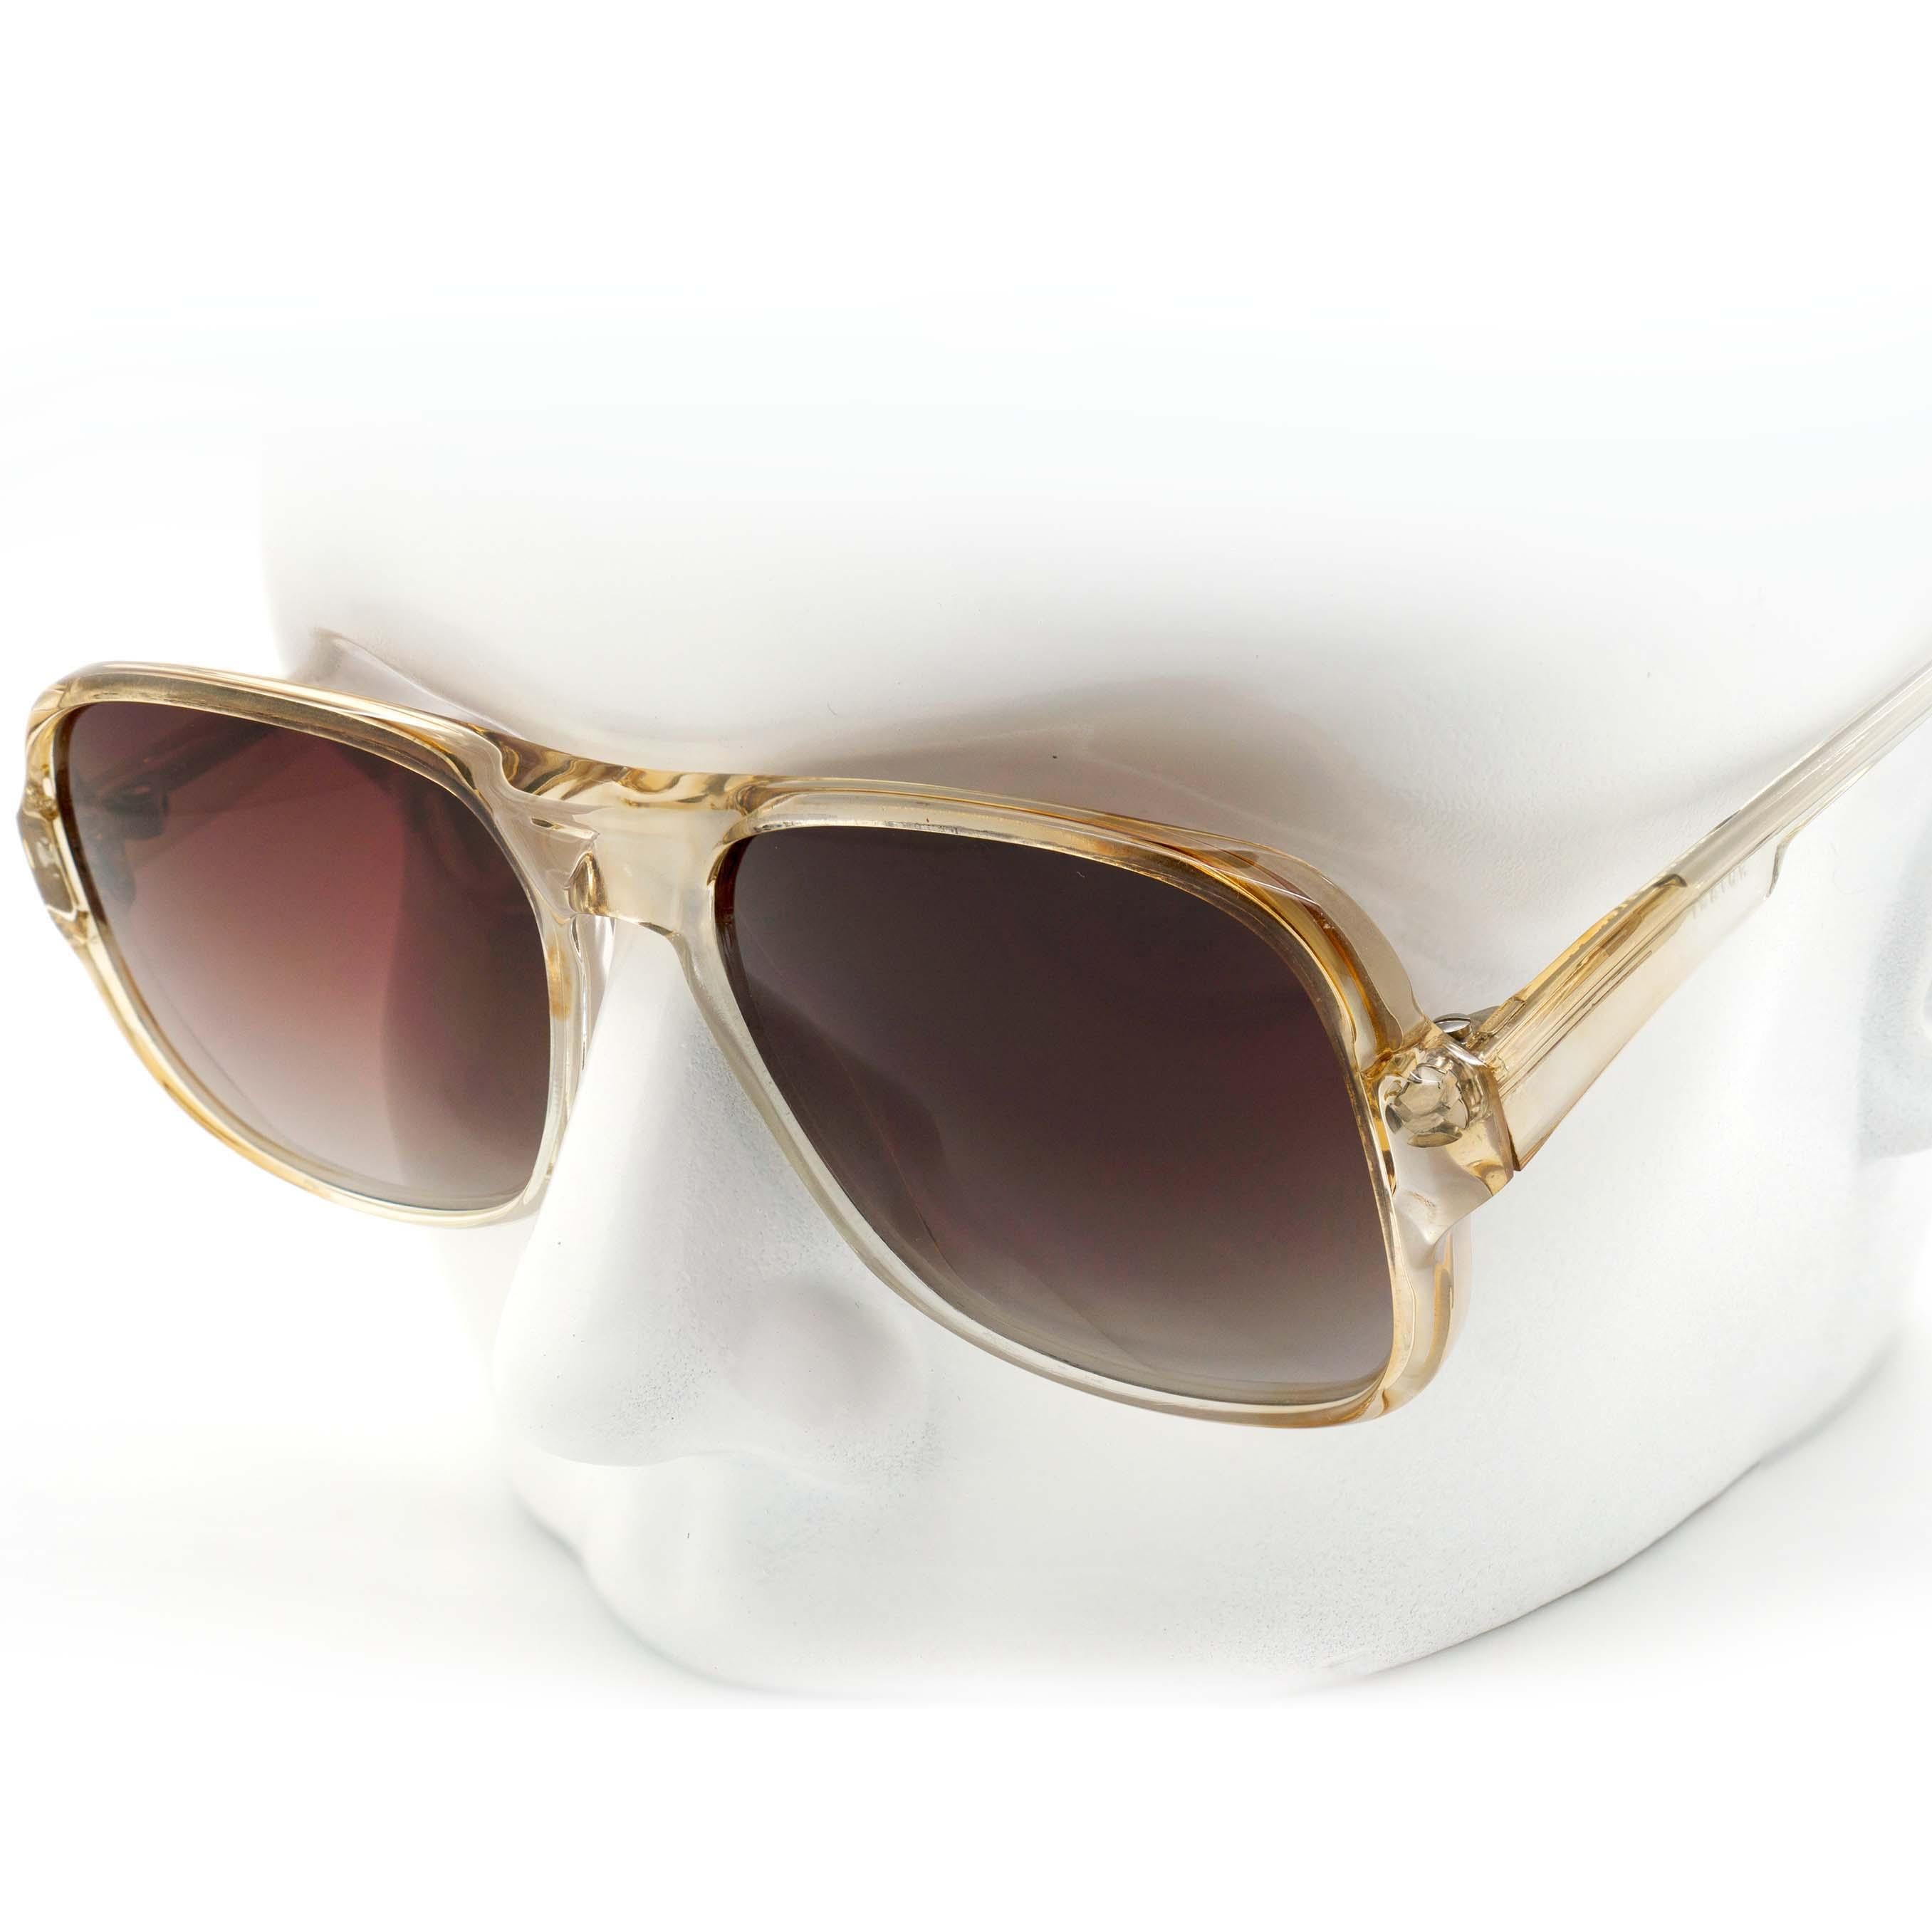 1970's aviator sunglasses